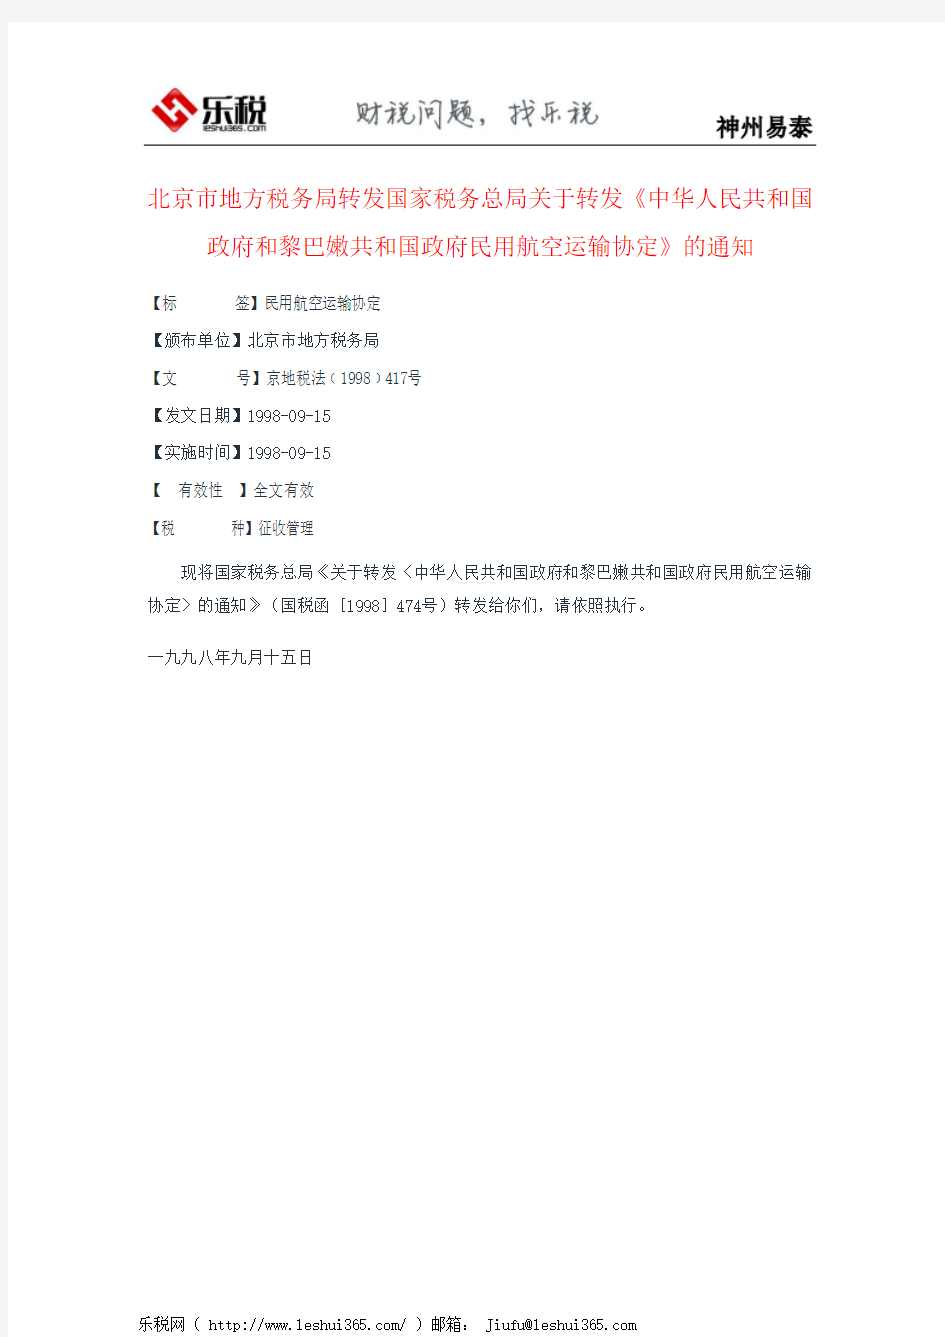 北京市地方税务局转发国家税务总局关于转发《中华人民共和国政府